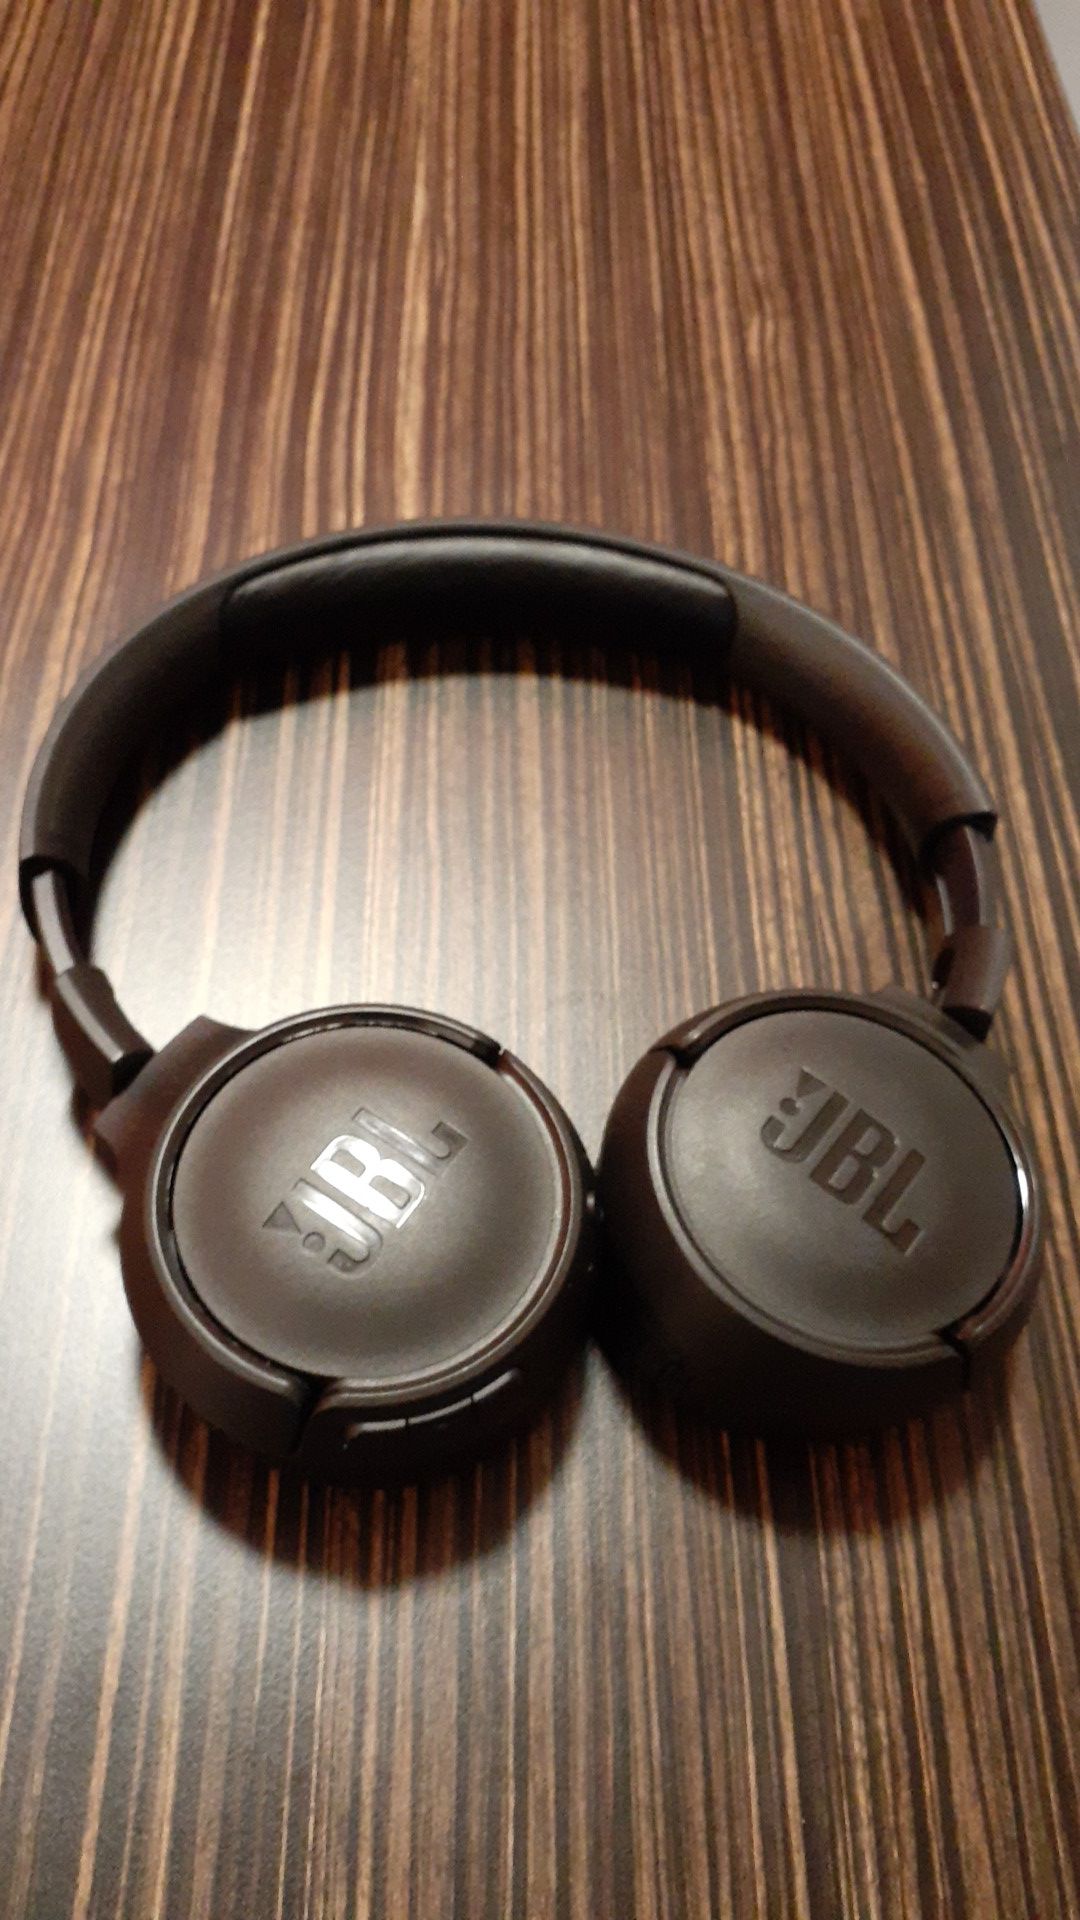 JBL bluetooth headphones